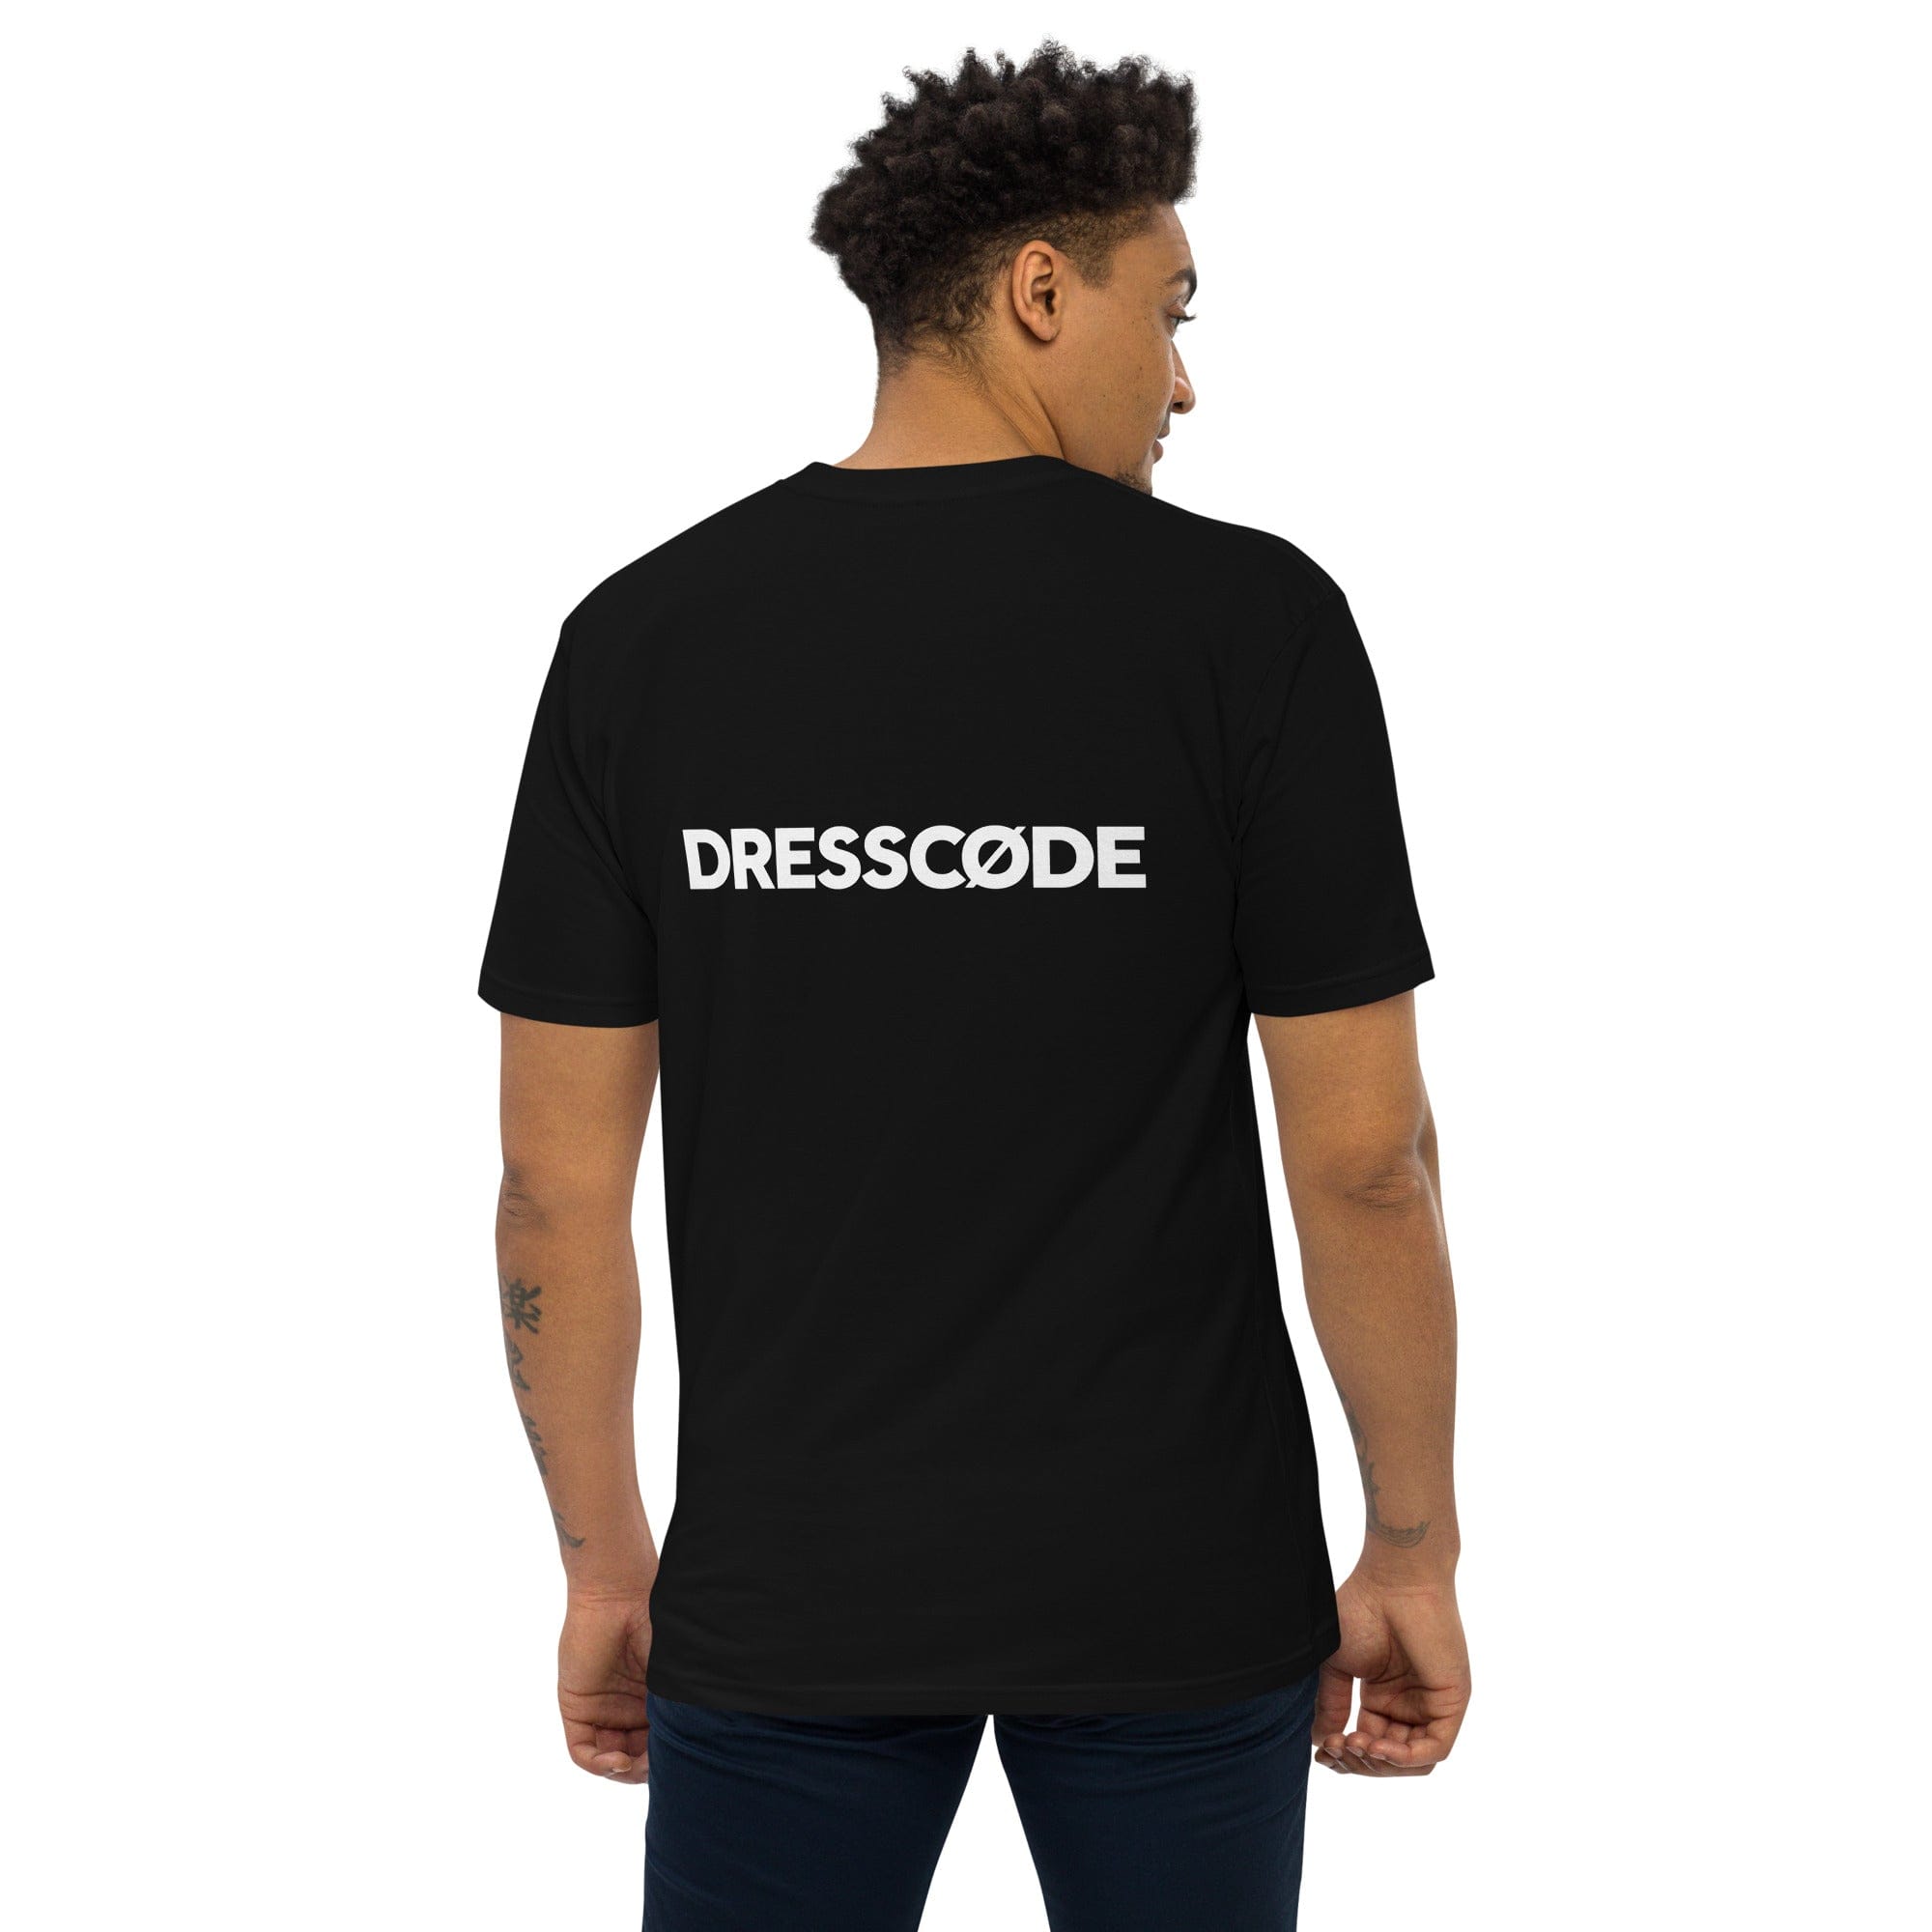 DRESSCODE T-Shirt Dream Sequence 4